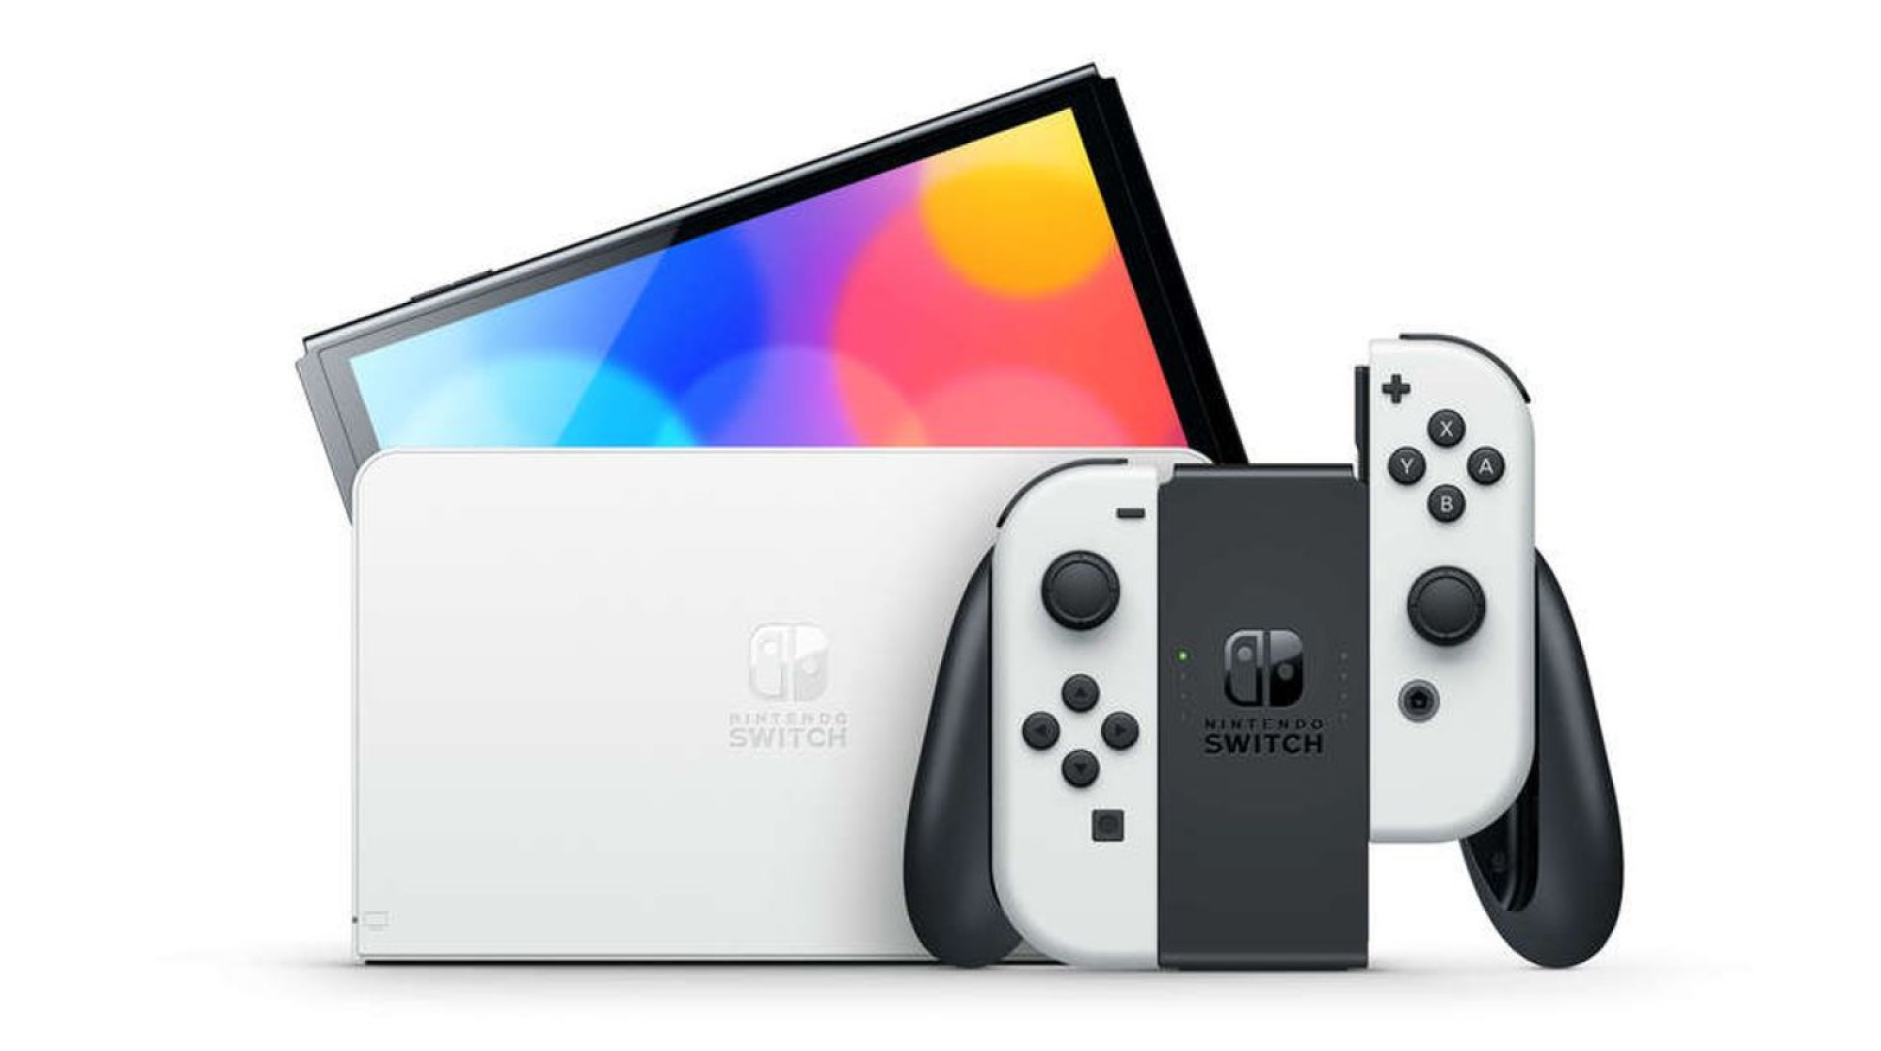 Nintendo วางแผนที่จะผลิต Switch น้อยลง 20% จากการขาดแคลนชิปอย่างต่อเนื่อง